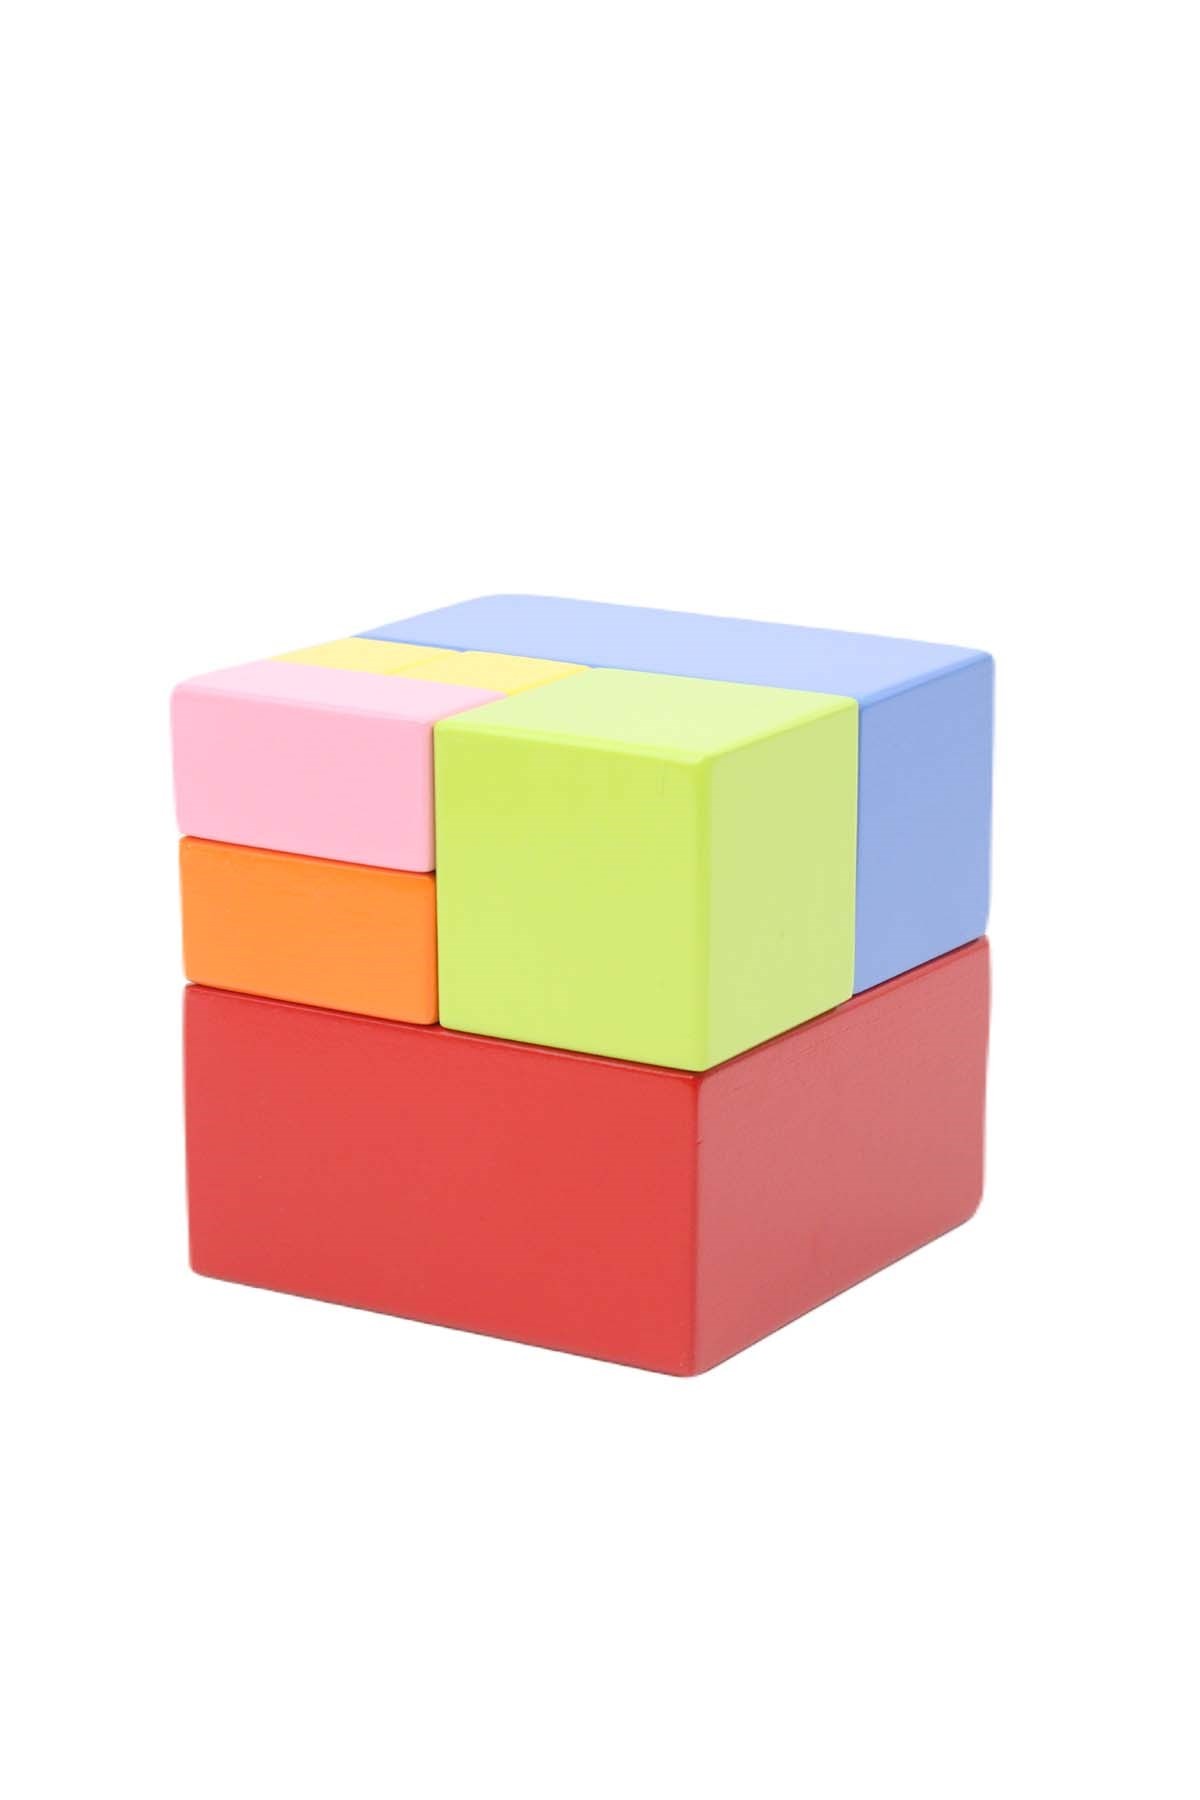 Cubo de aprendizaje temprano de formas y colores con piezas enteras